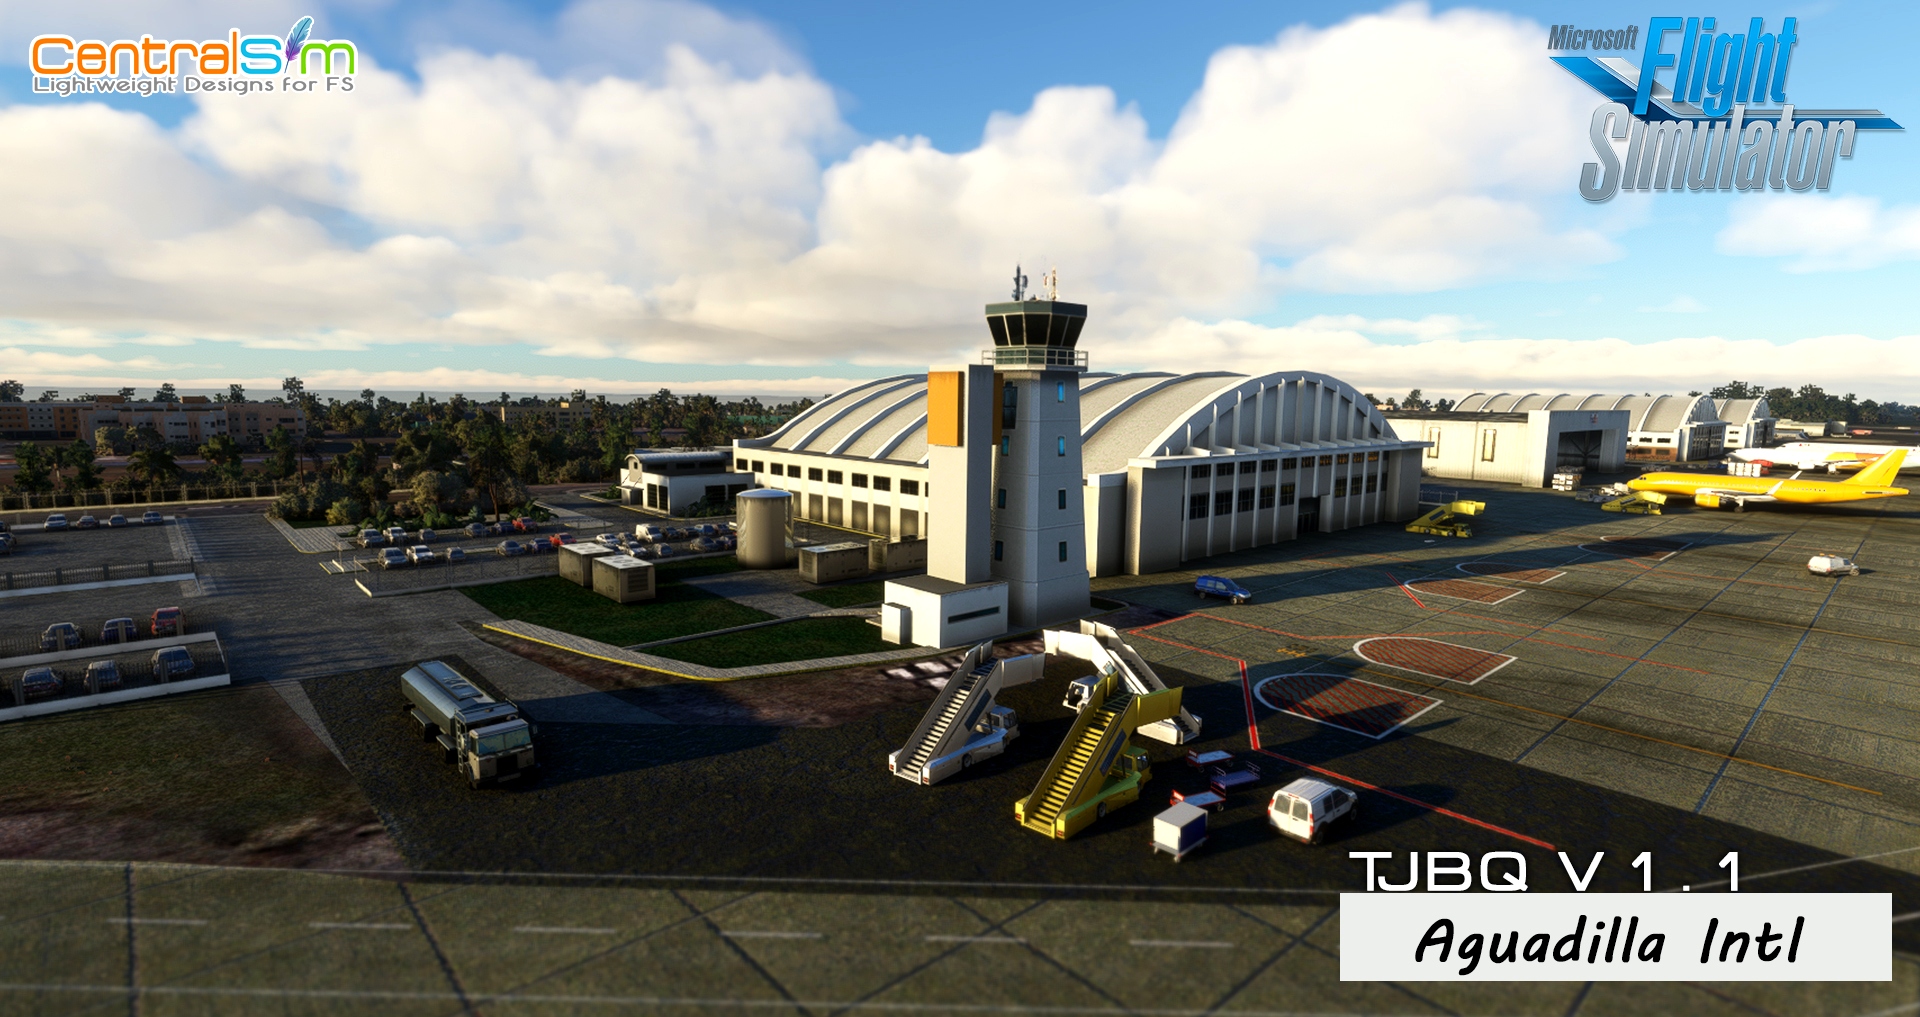 TJBQ - Aguadilla Intl. Airport Microsoft Flight Simulator